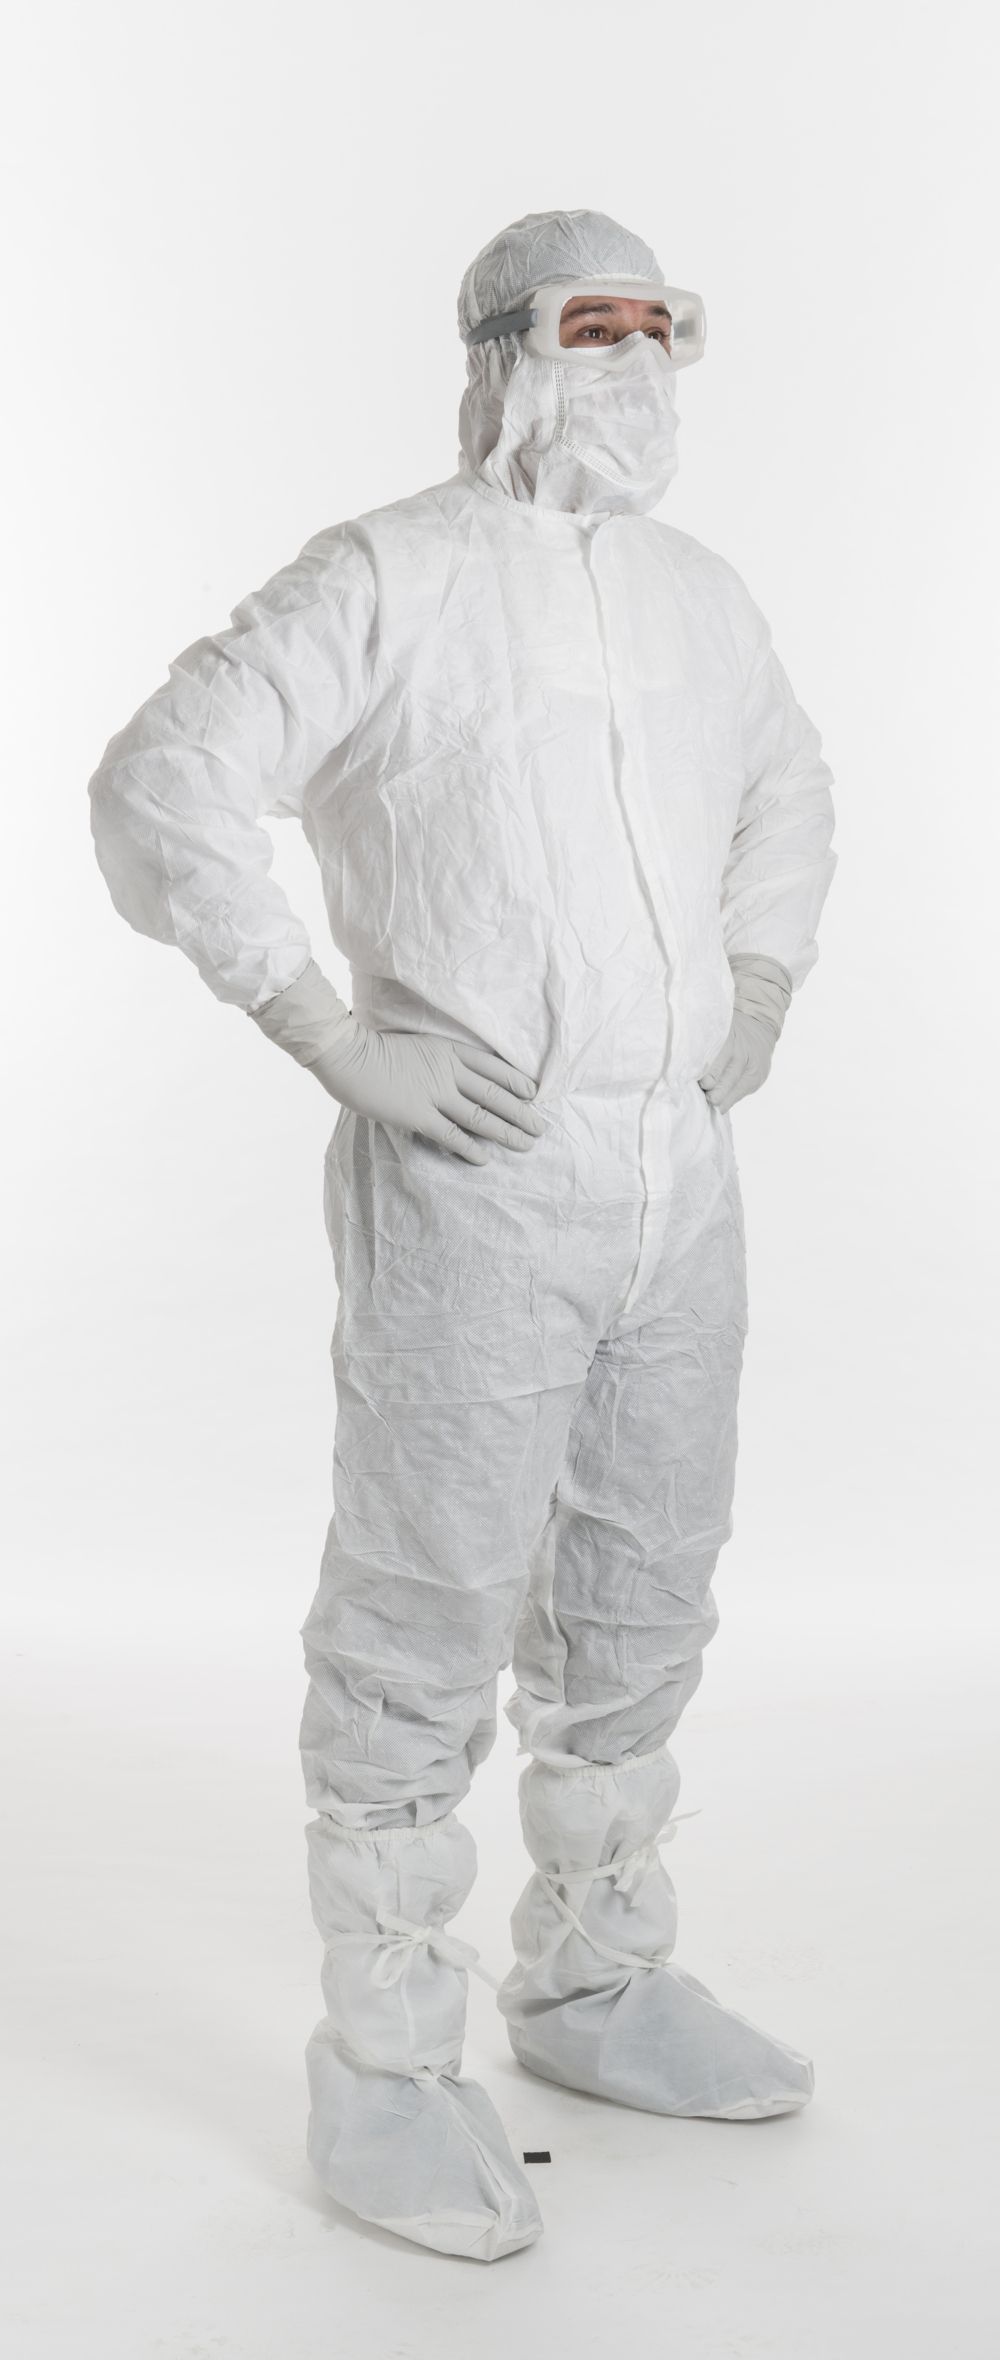 Kimtech™ A5 Sterile Reinraumbekleidung 88802 – weiß, L, 1x25 (insgesamt 25 Stück) - 88802